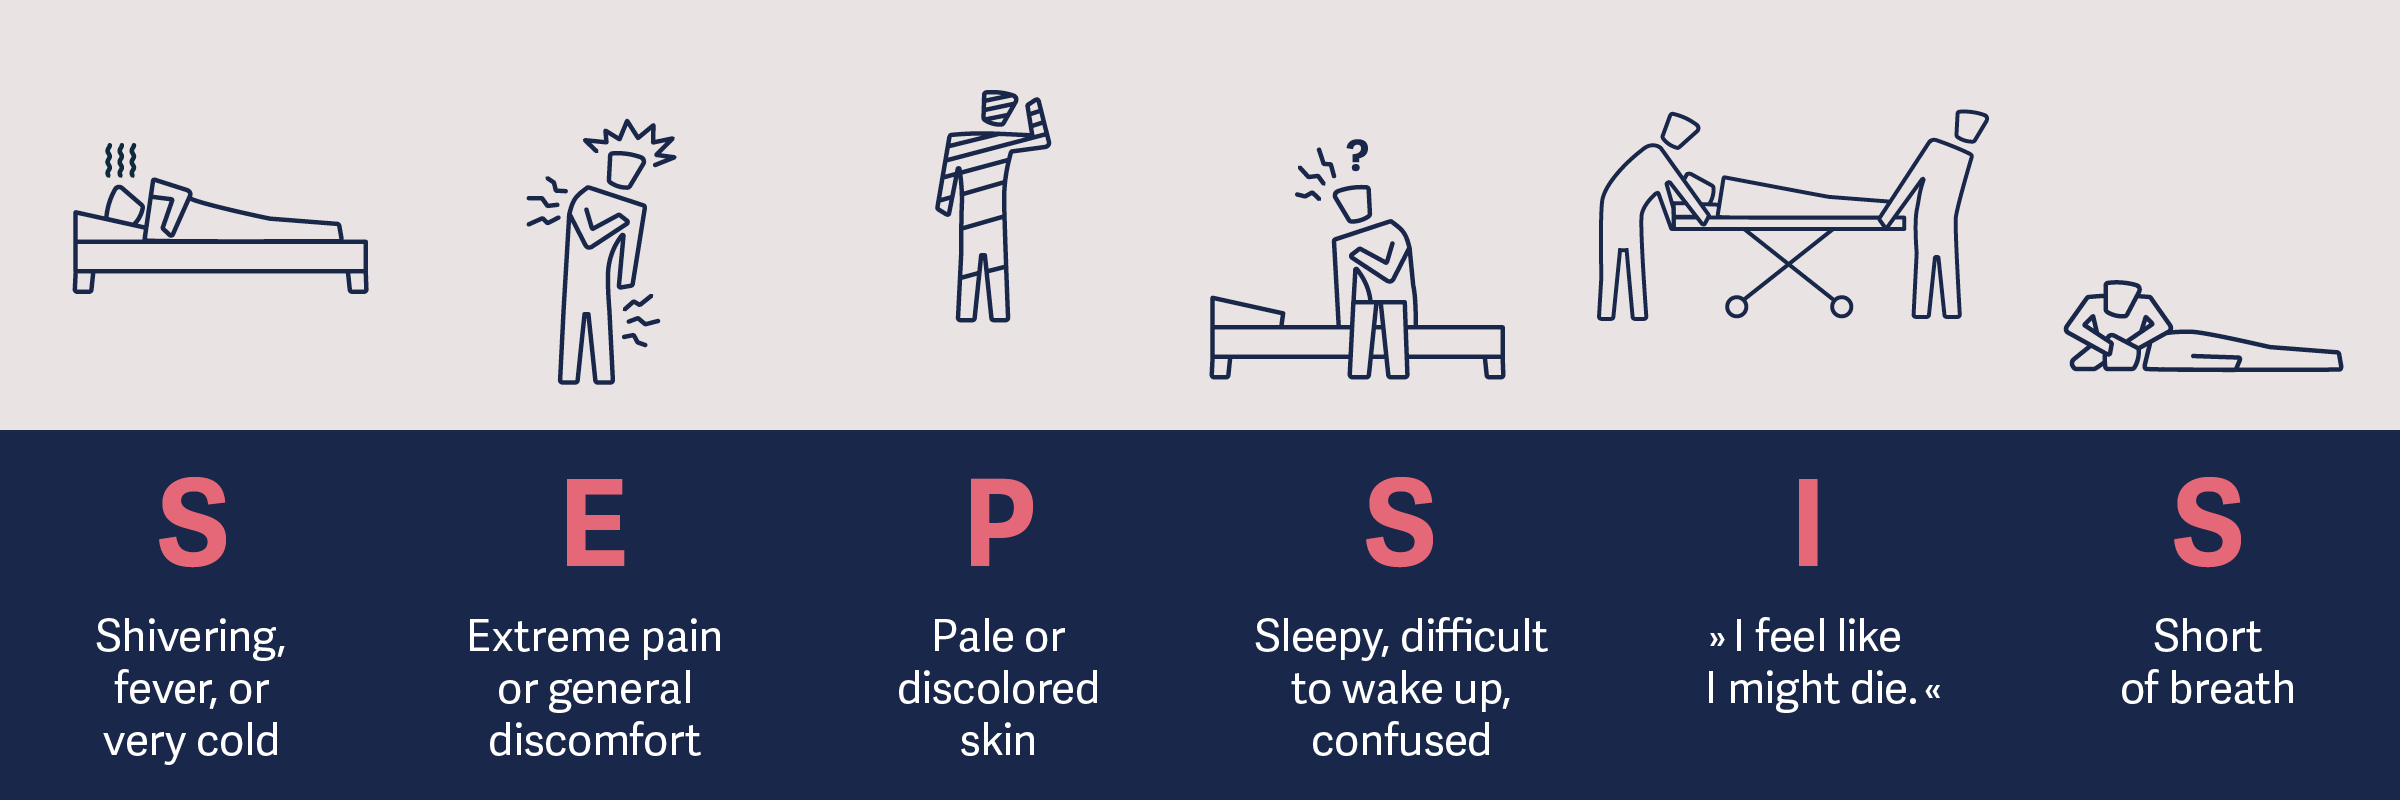 Symptoms of Sepsis